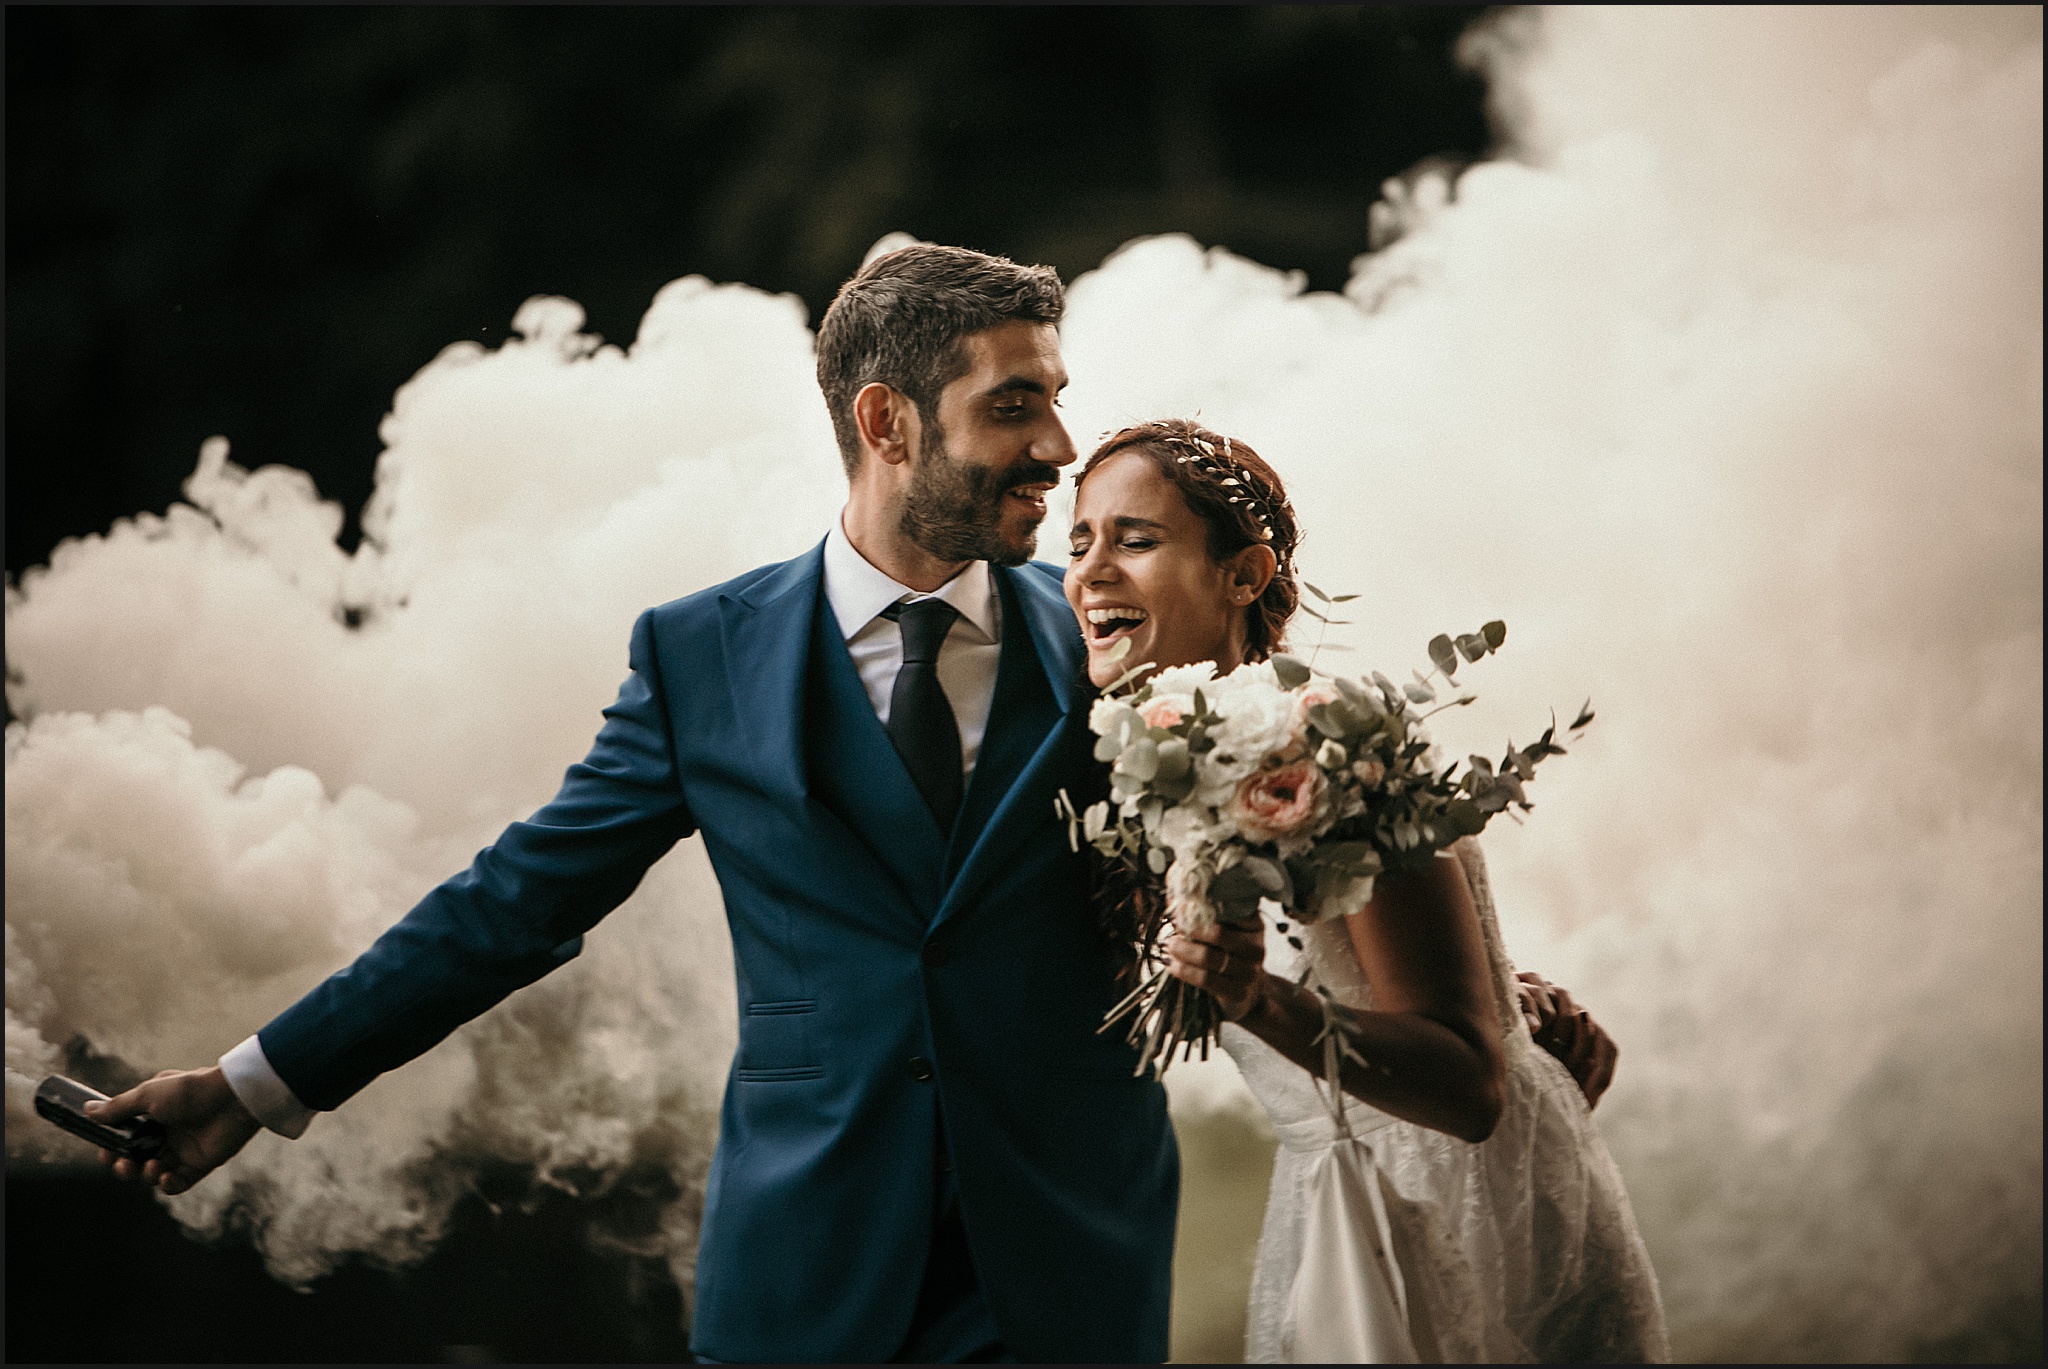 Photographe-Paris-Mariage photo de couple avec fumigènes oise